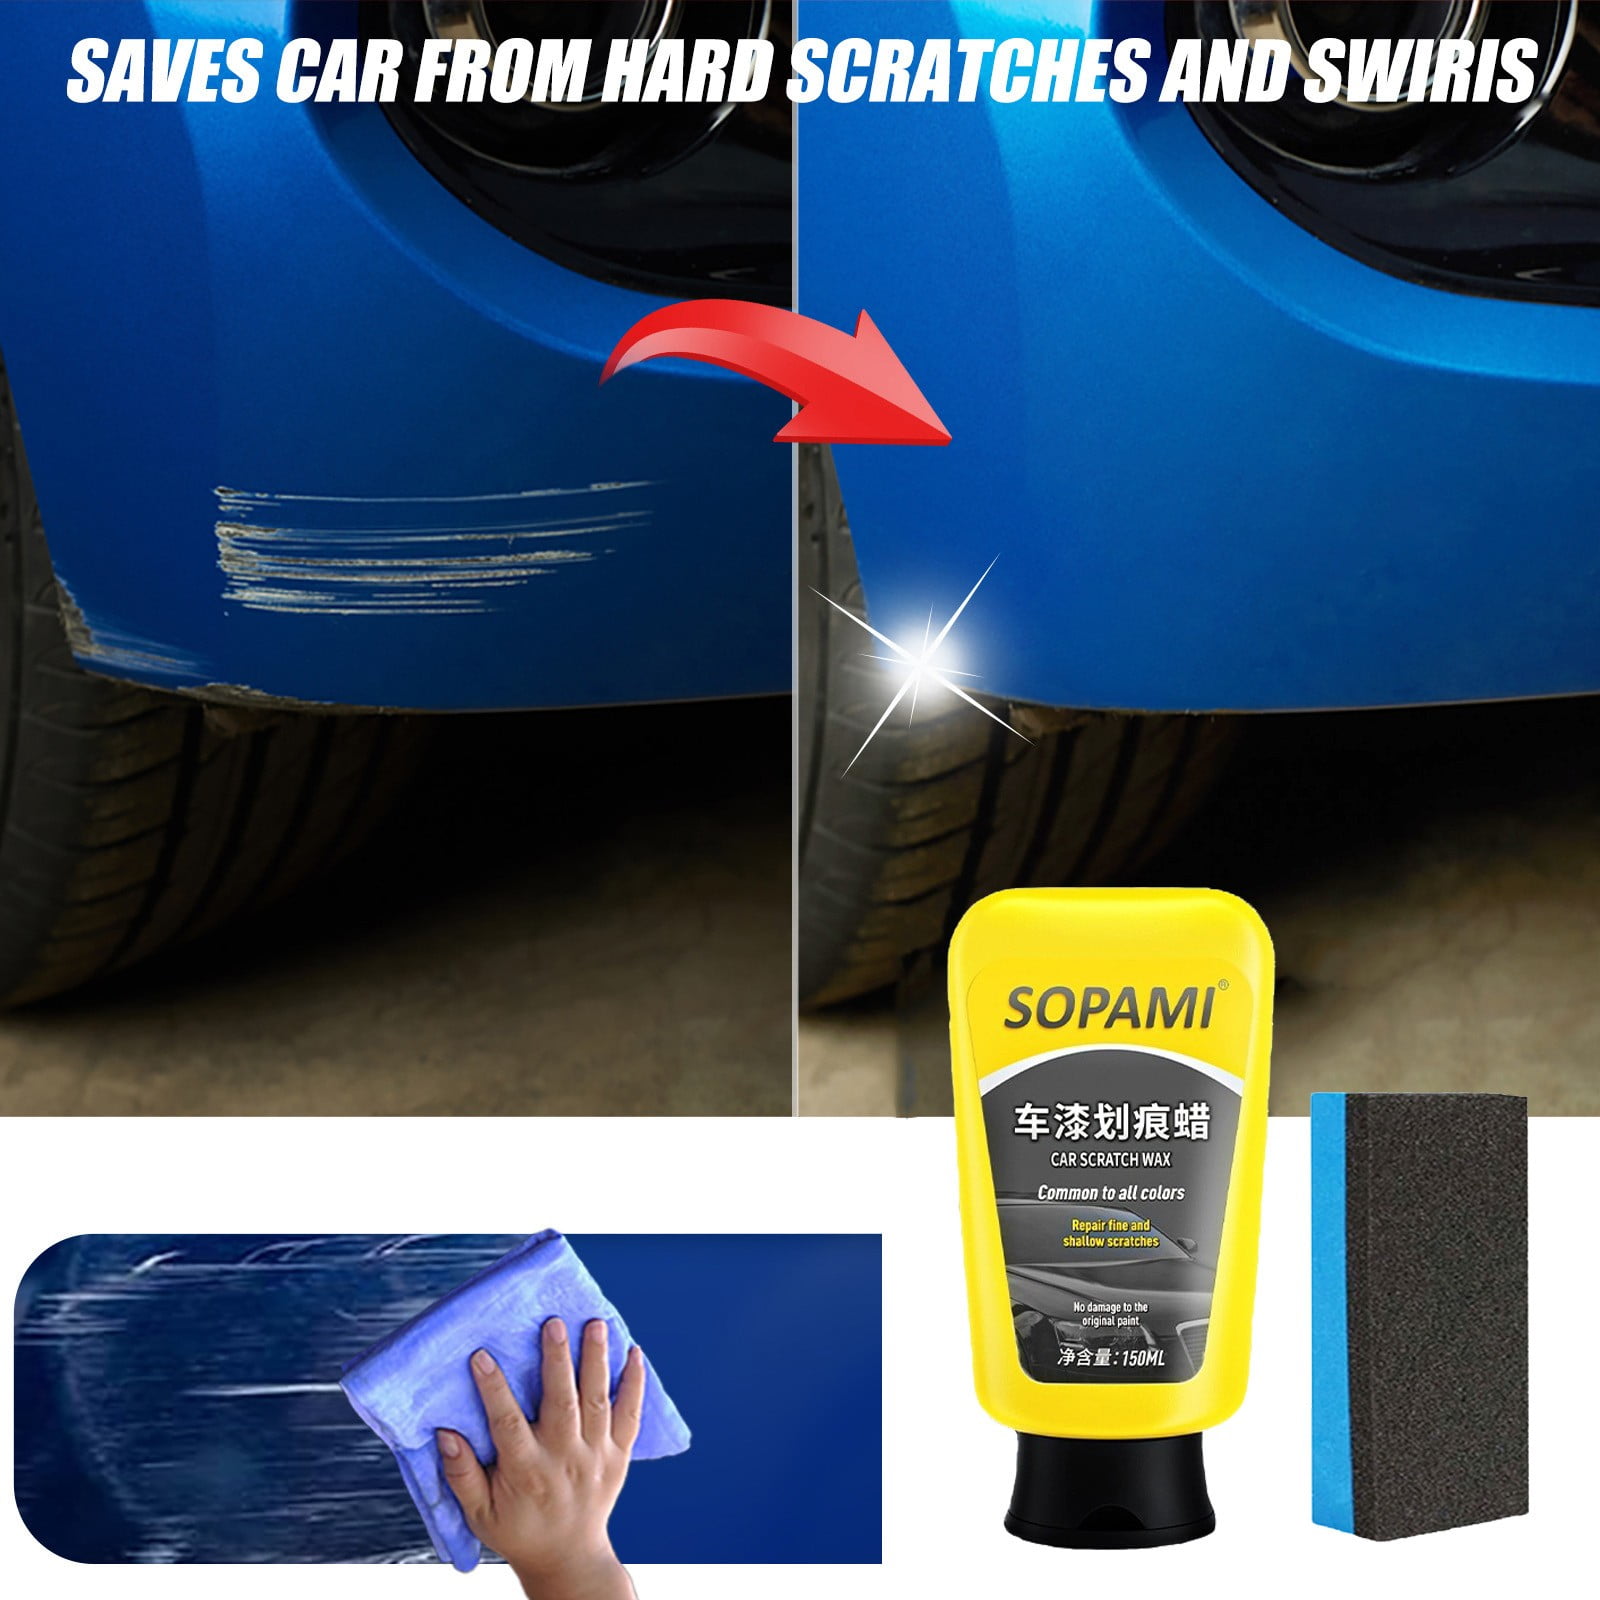 Sopami Car Spray,Quick Coat Car Wax Polish Spray,Nano Ceramic Coating Spray  Agent,3 in 1 High Protection Quick Car Coating Spray,Agent Protect Your